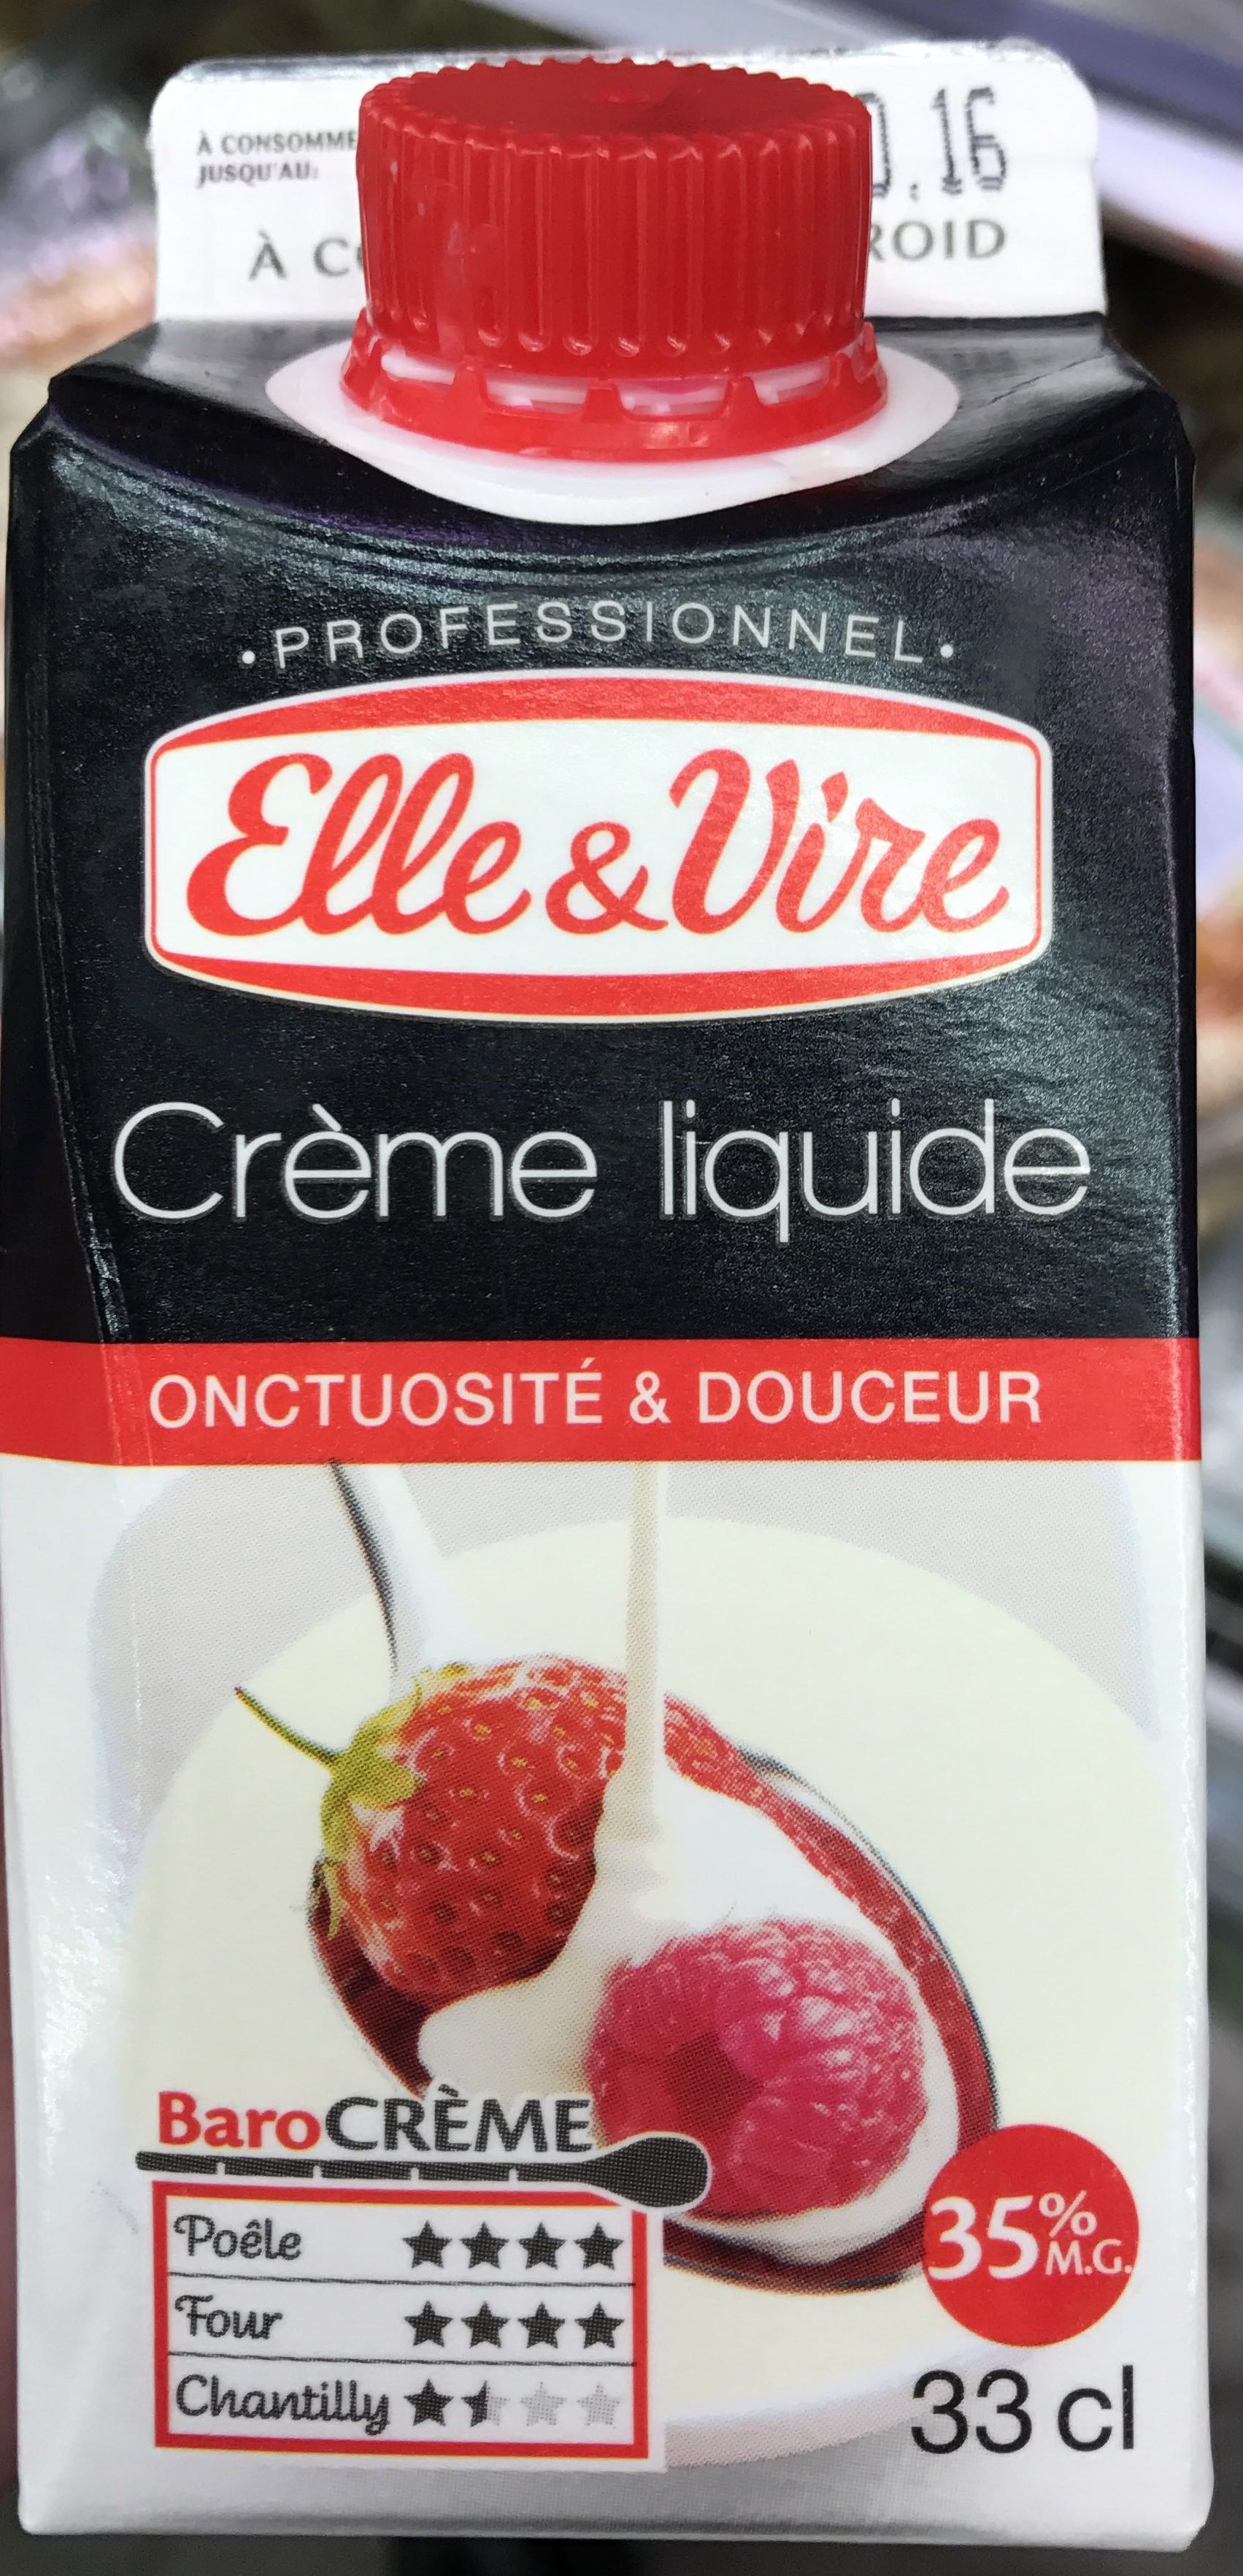 Crème Liquide onctuosité & douceur - Product - fr